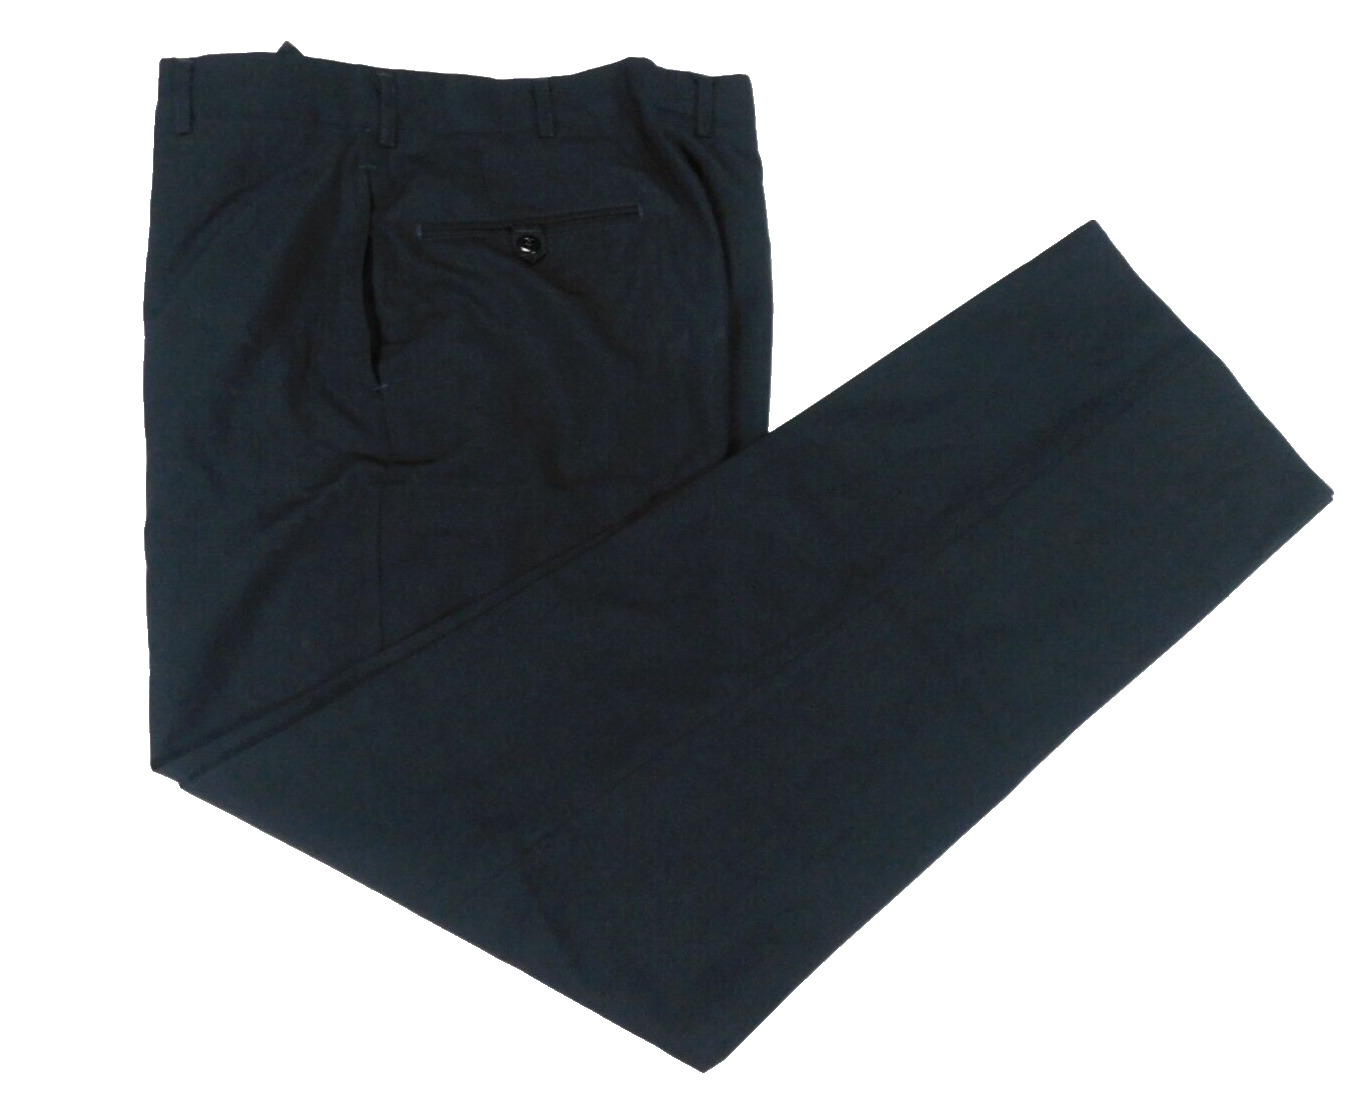 US Navy Blue Pants 33 Long Service Dress Trousers Class 15 Washable Uniform